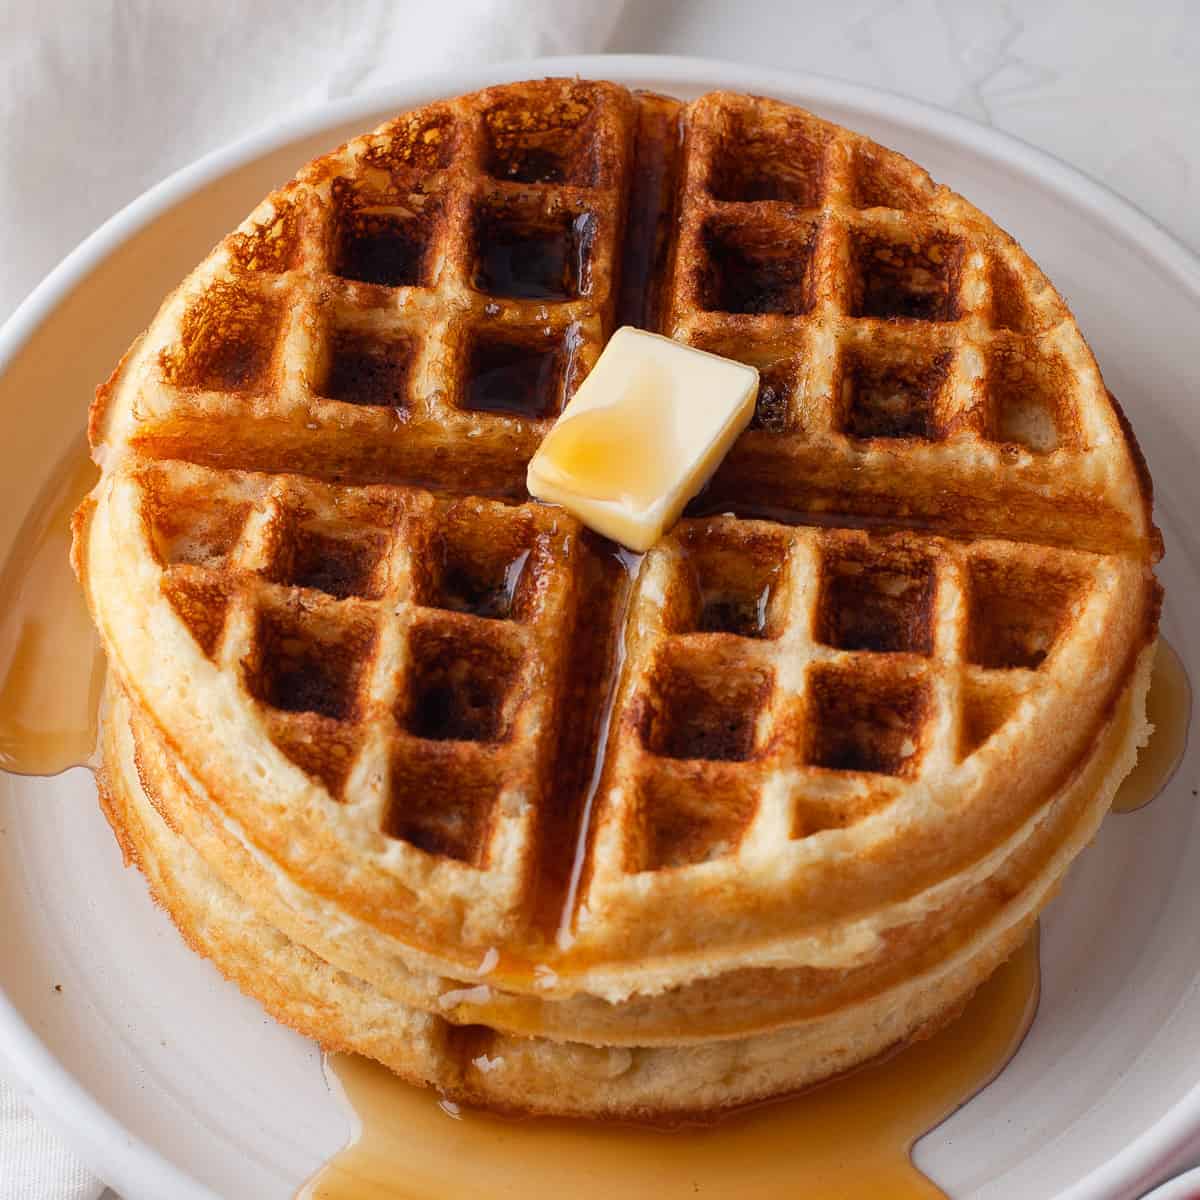 https://houseofnasheats.com/wp-content/uploads/2021/09/Best-Belgian-Waffles-1.jpg